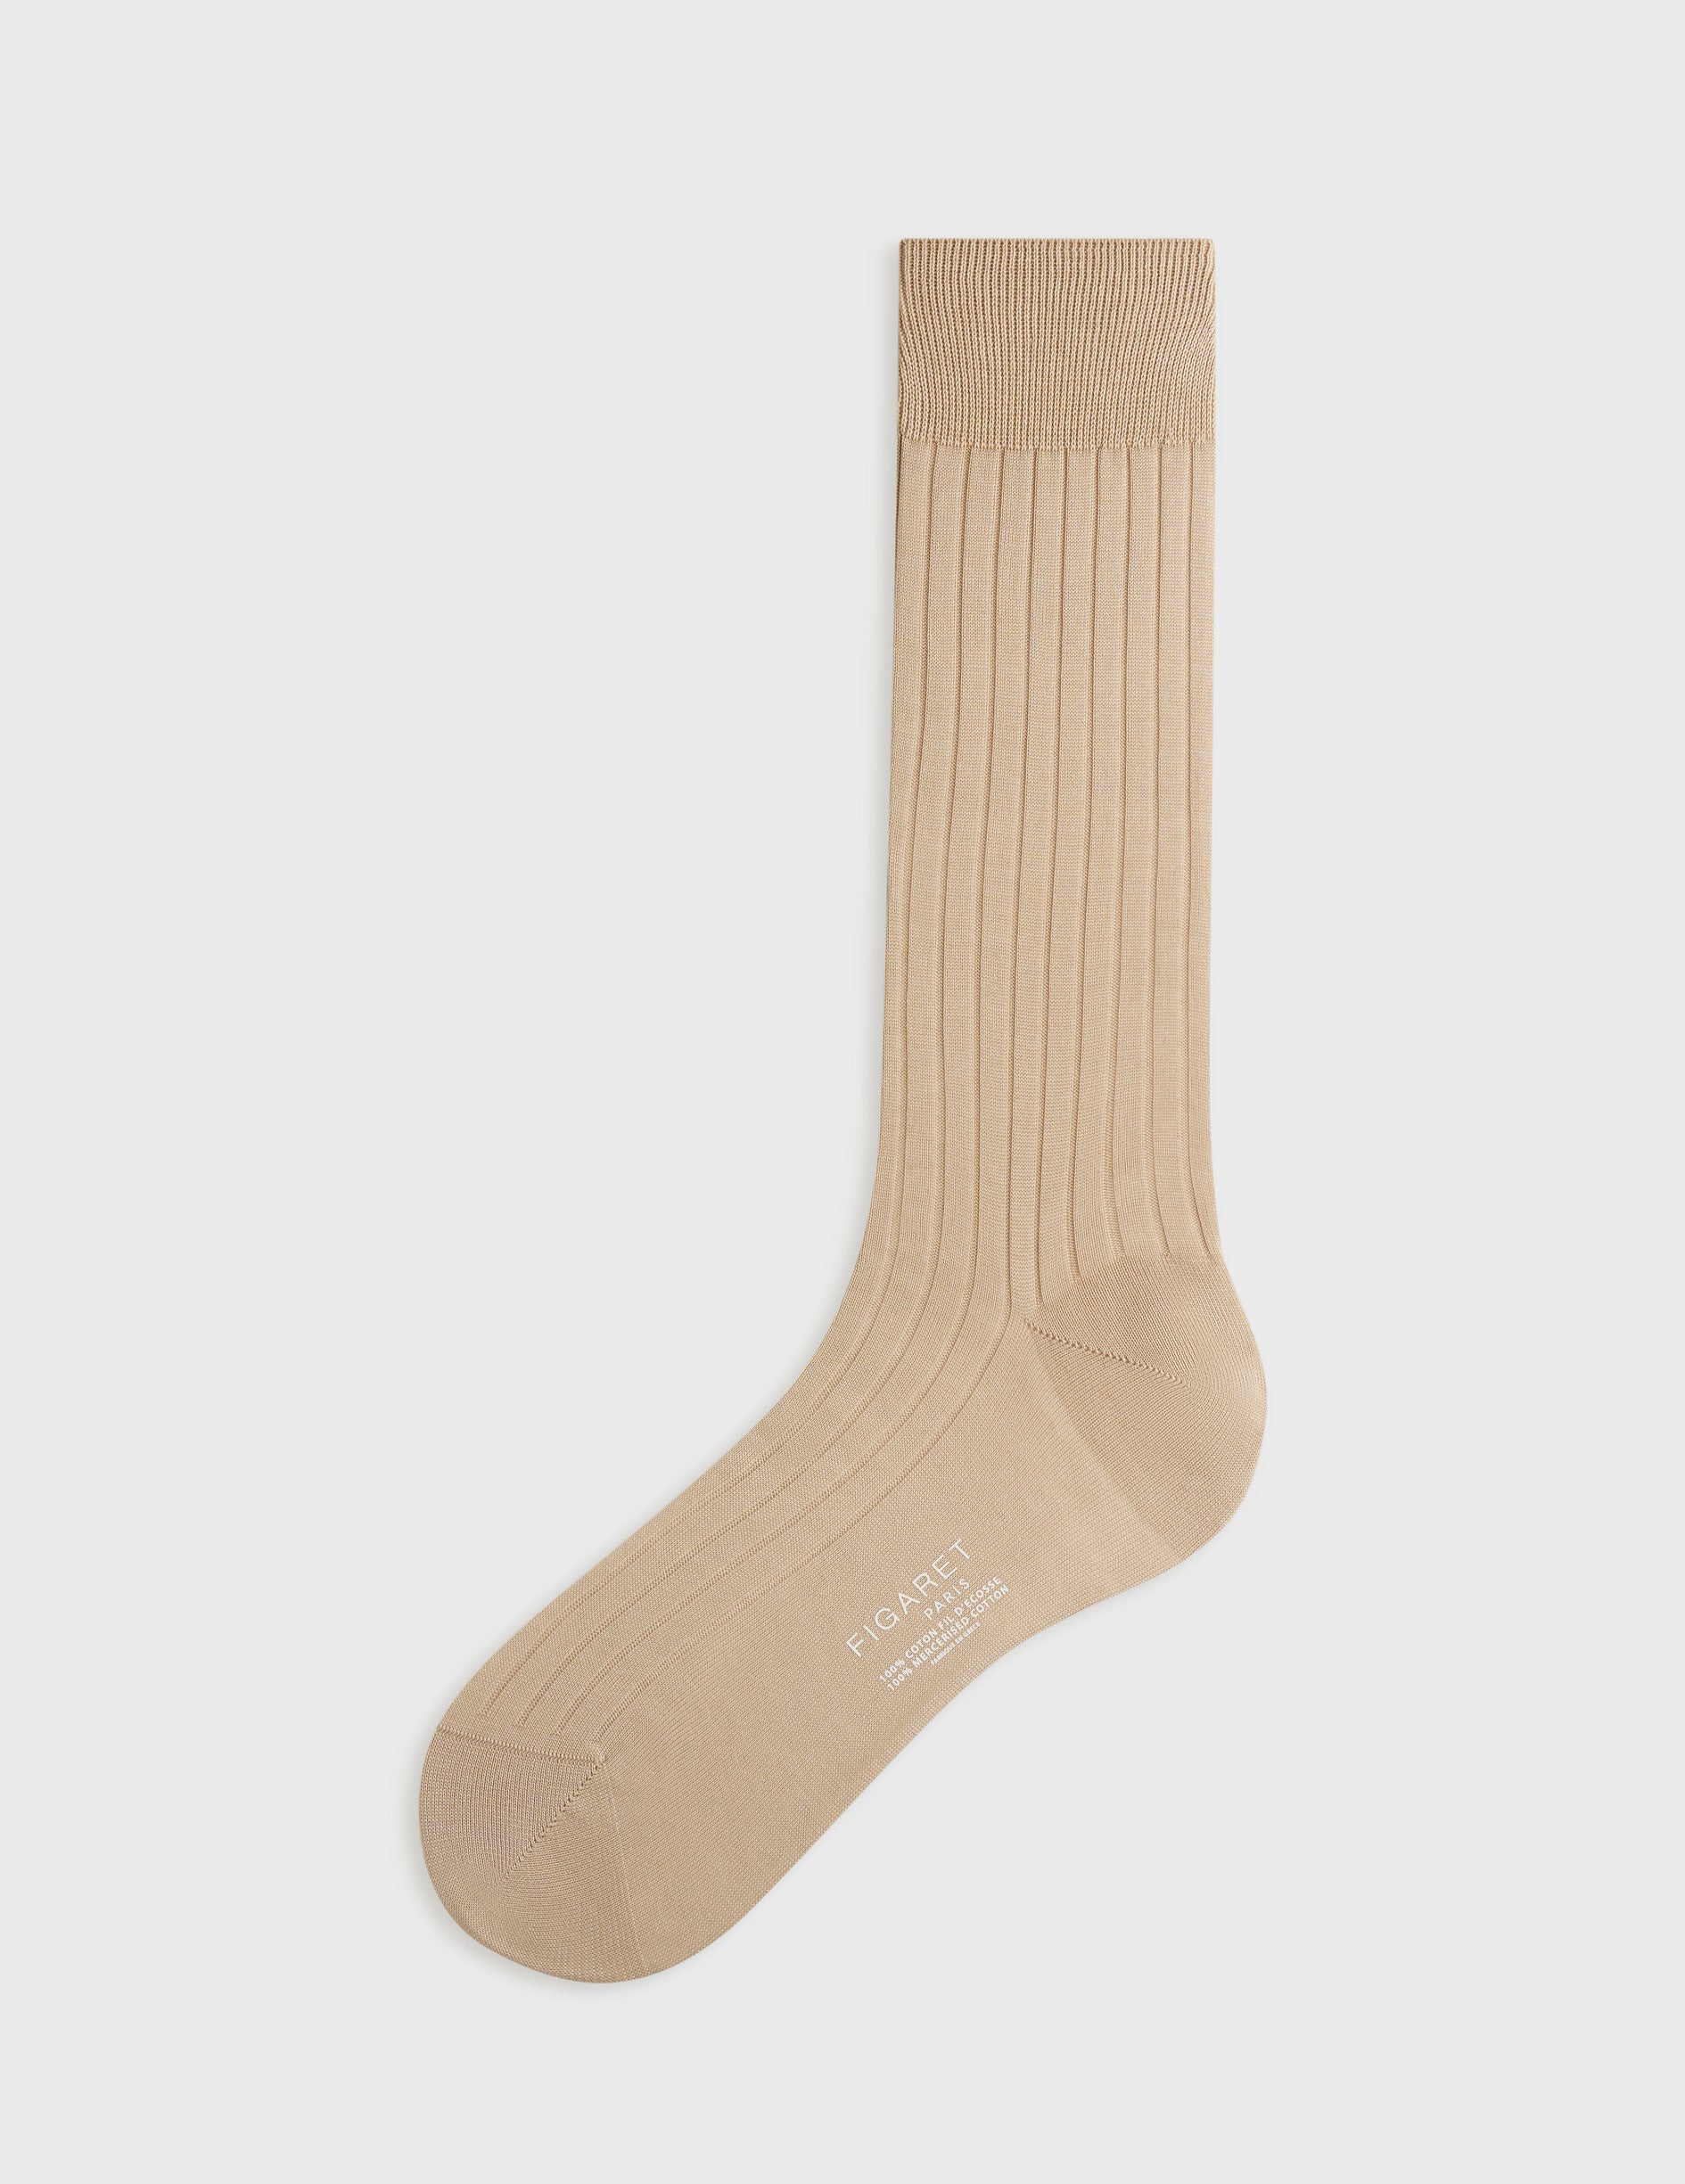 Beige double lisle thread socks